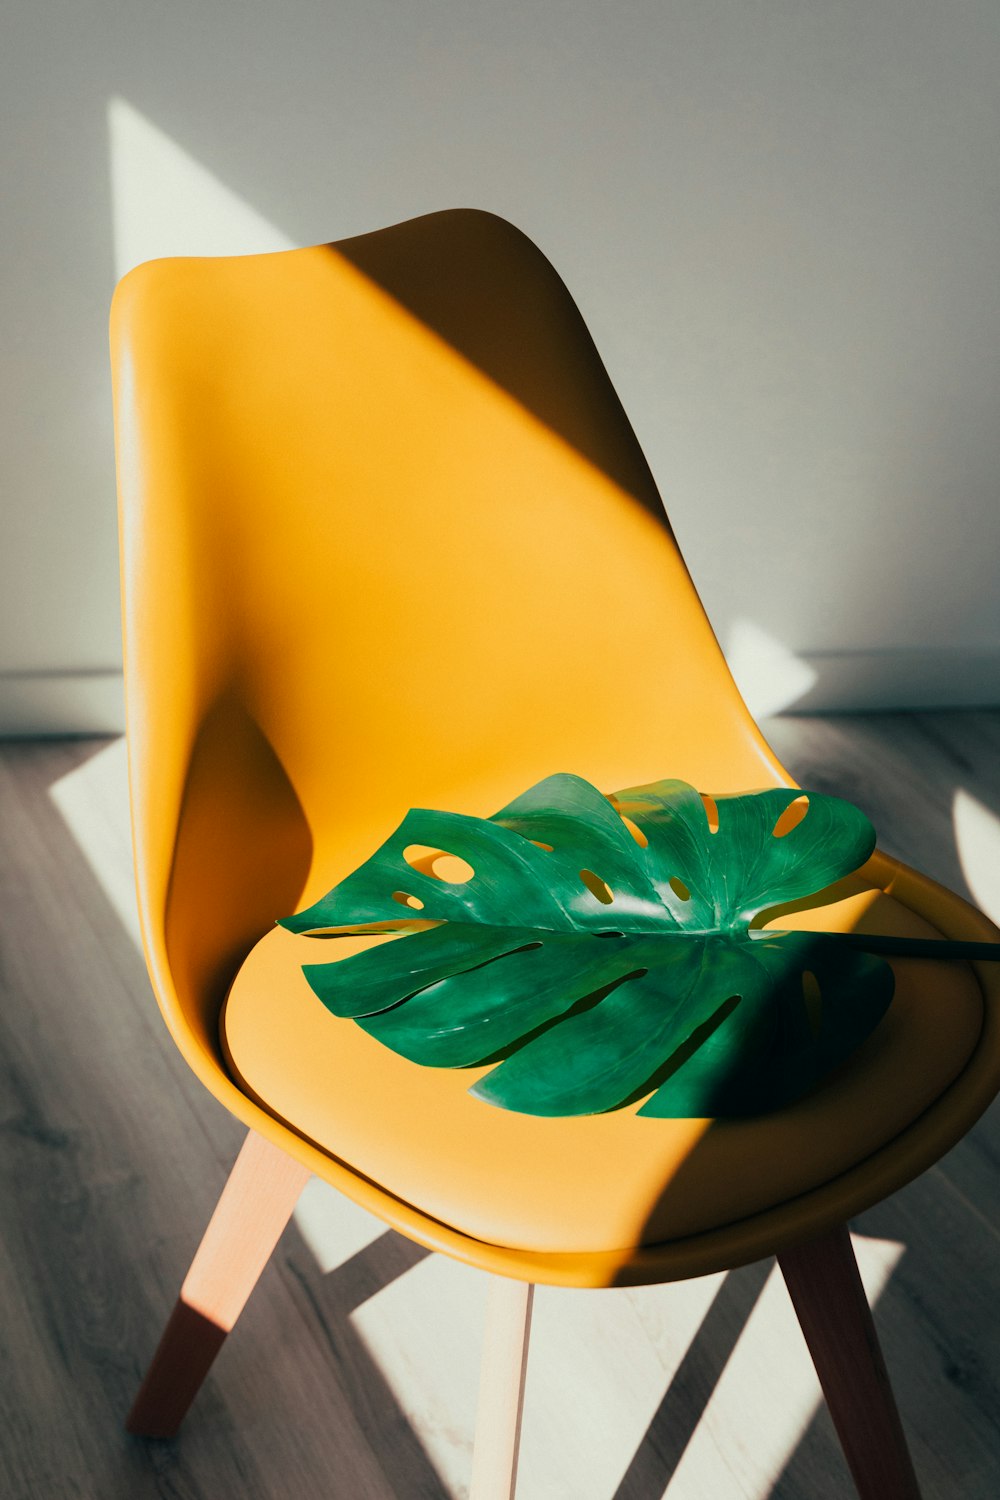 foglia verde su sedia gialla